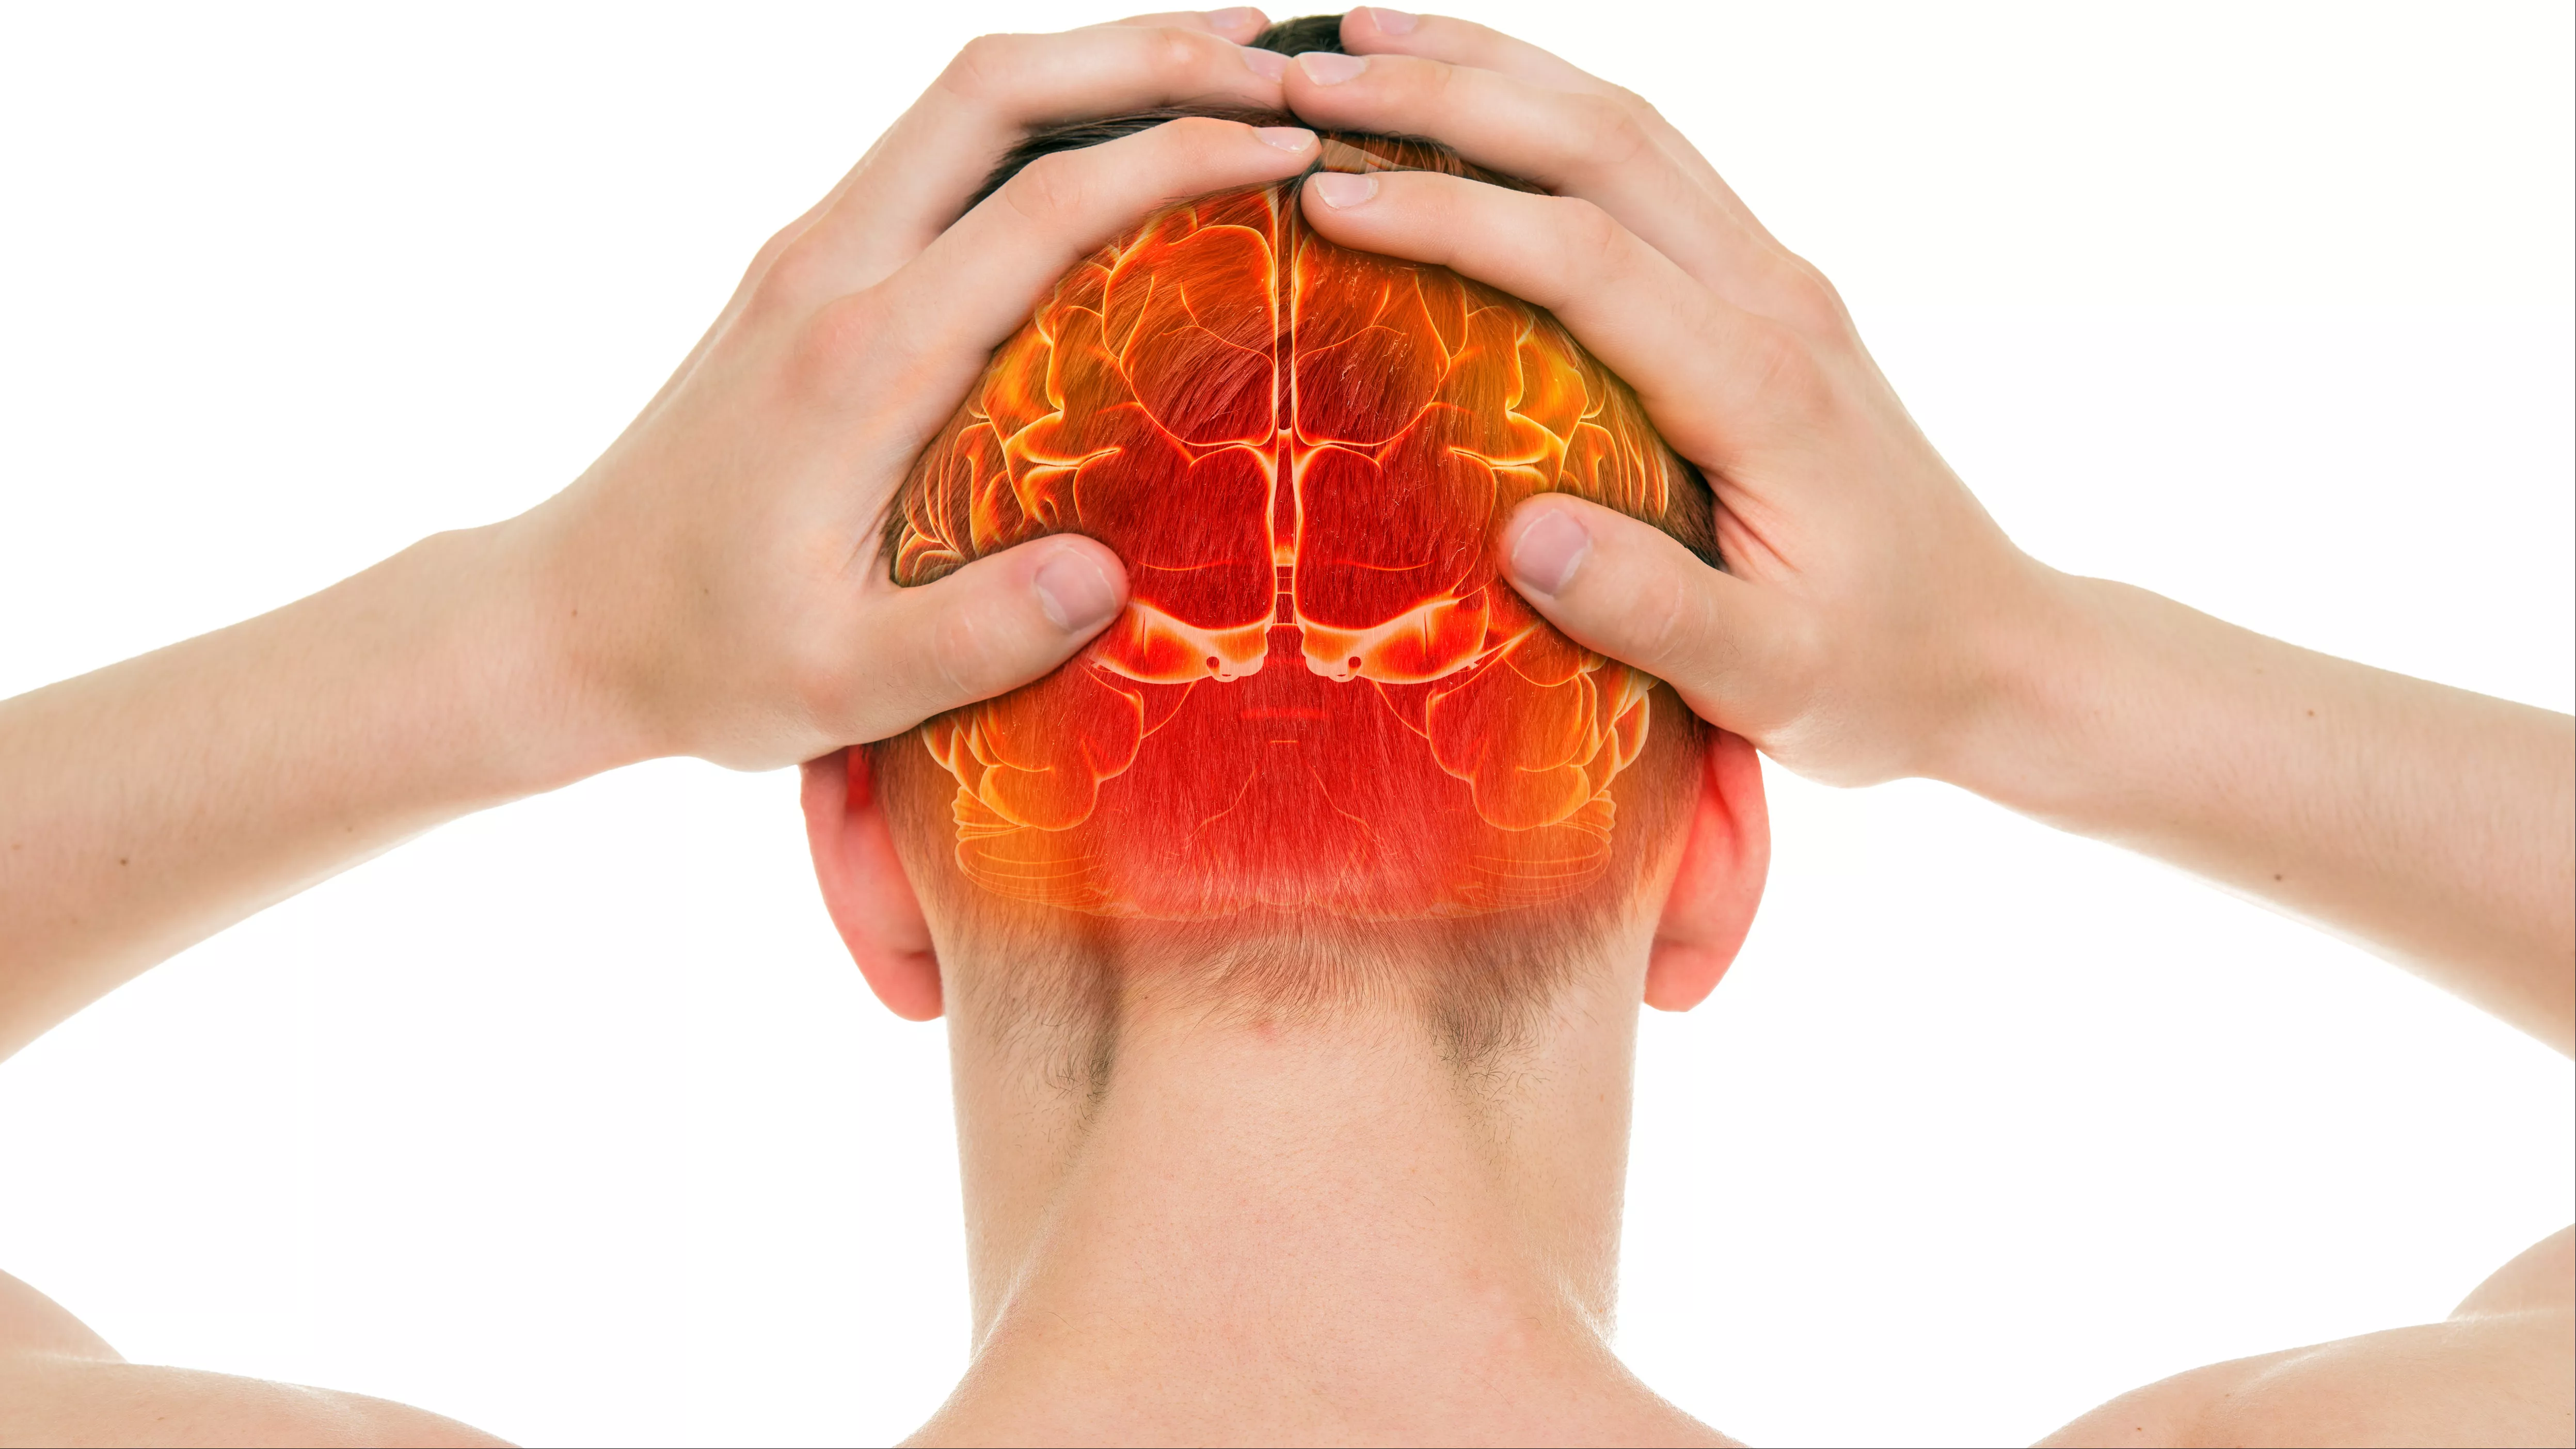 10 Penyebab Sakit Kepala Bagian Belakang, Berbahayakah?